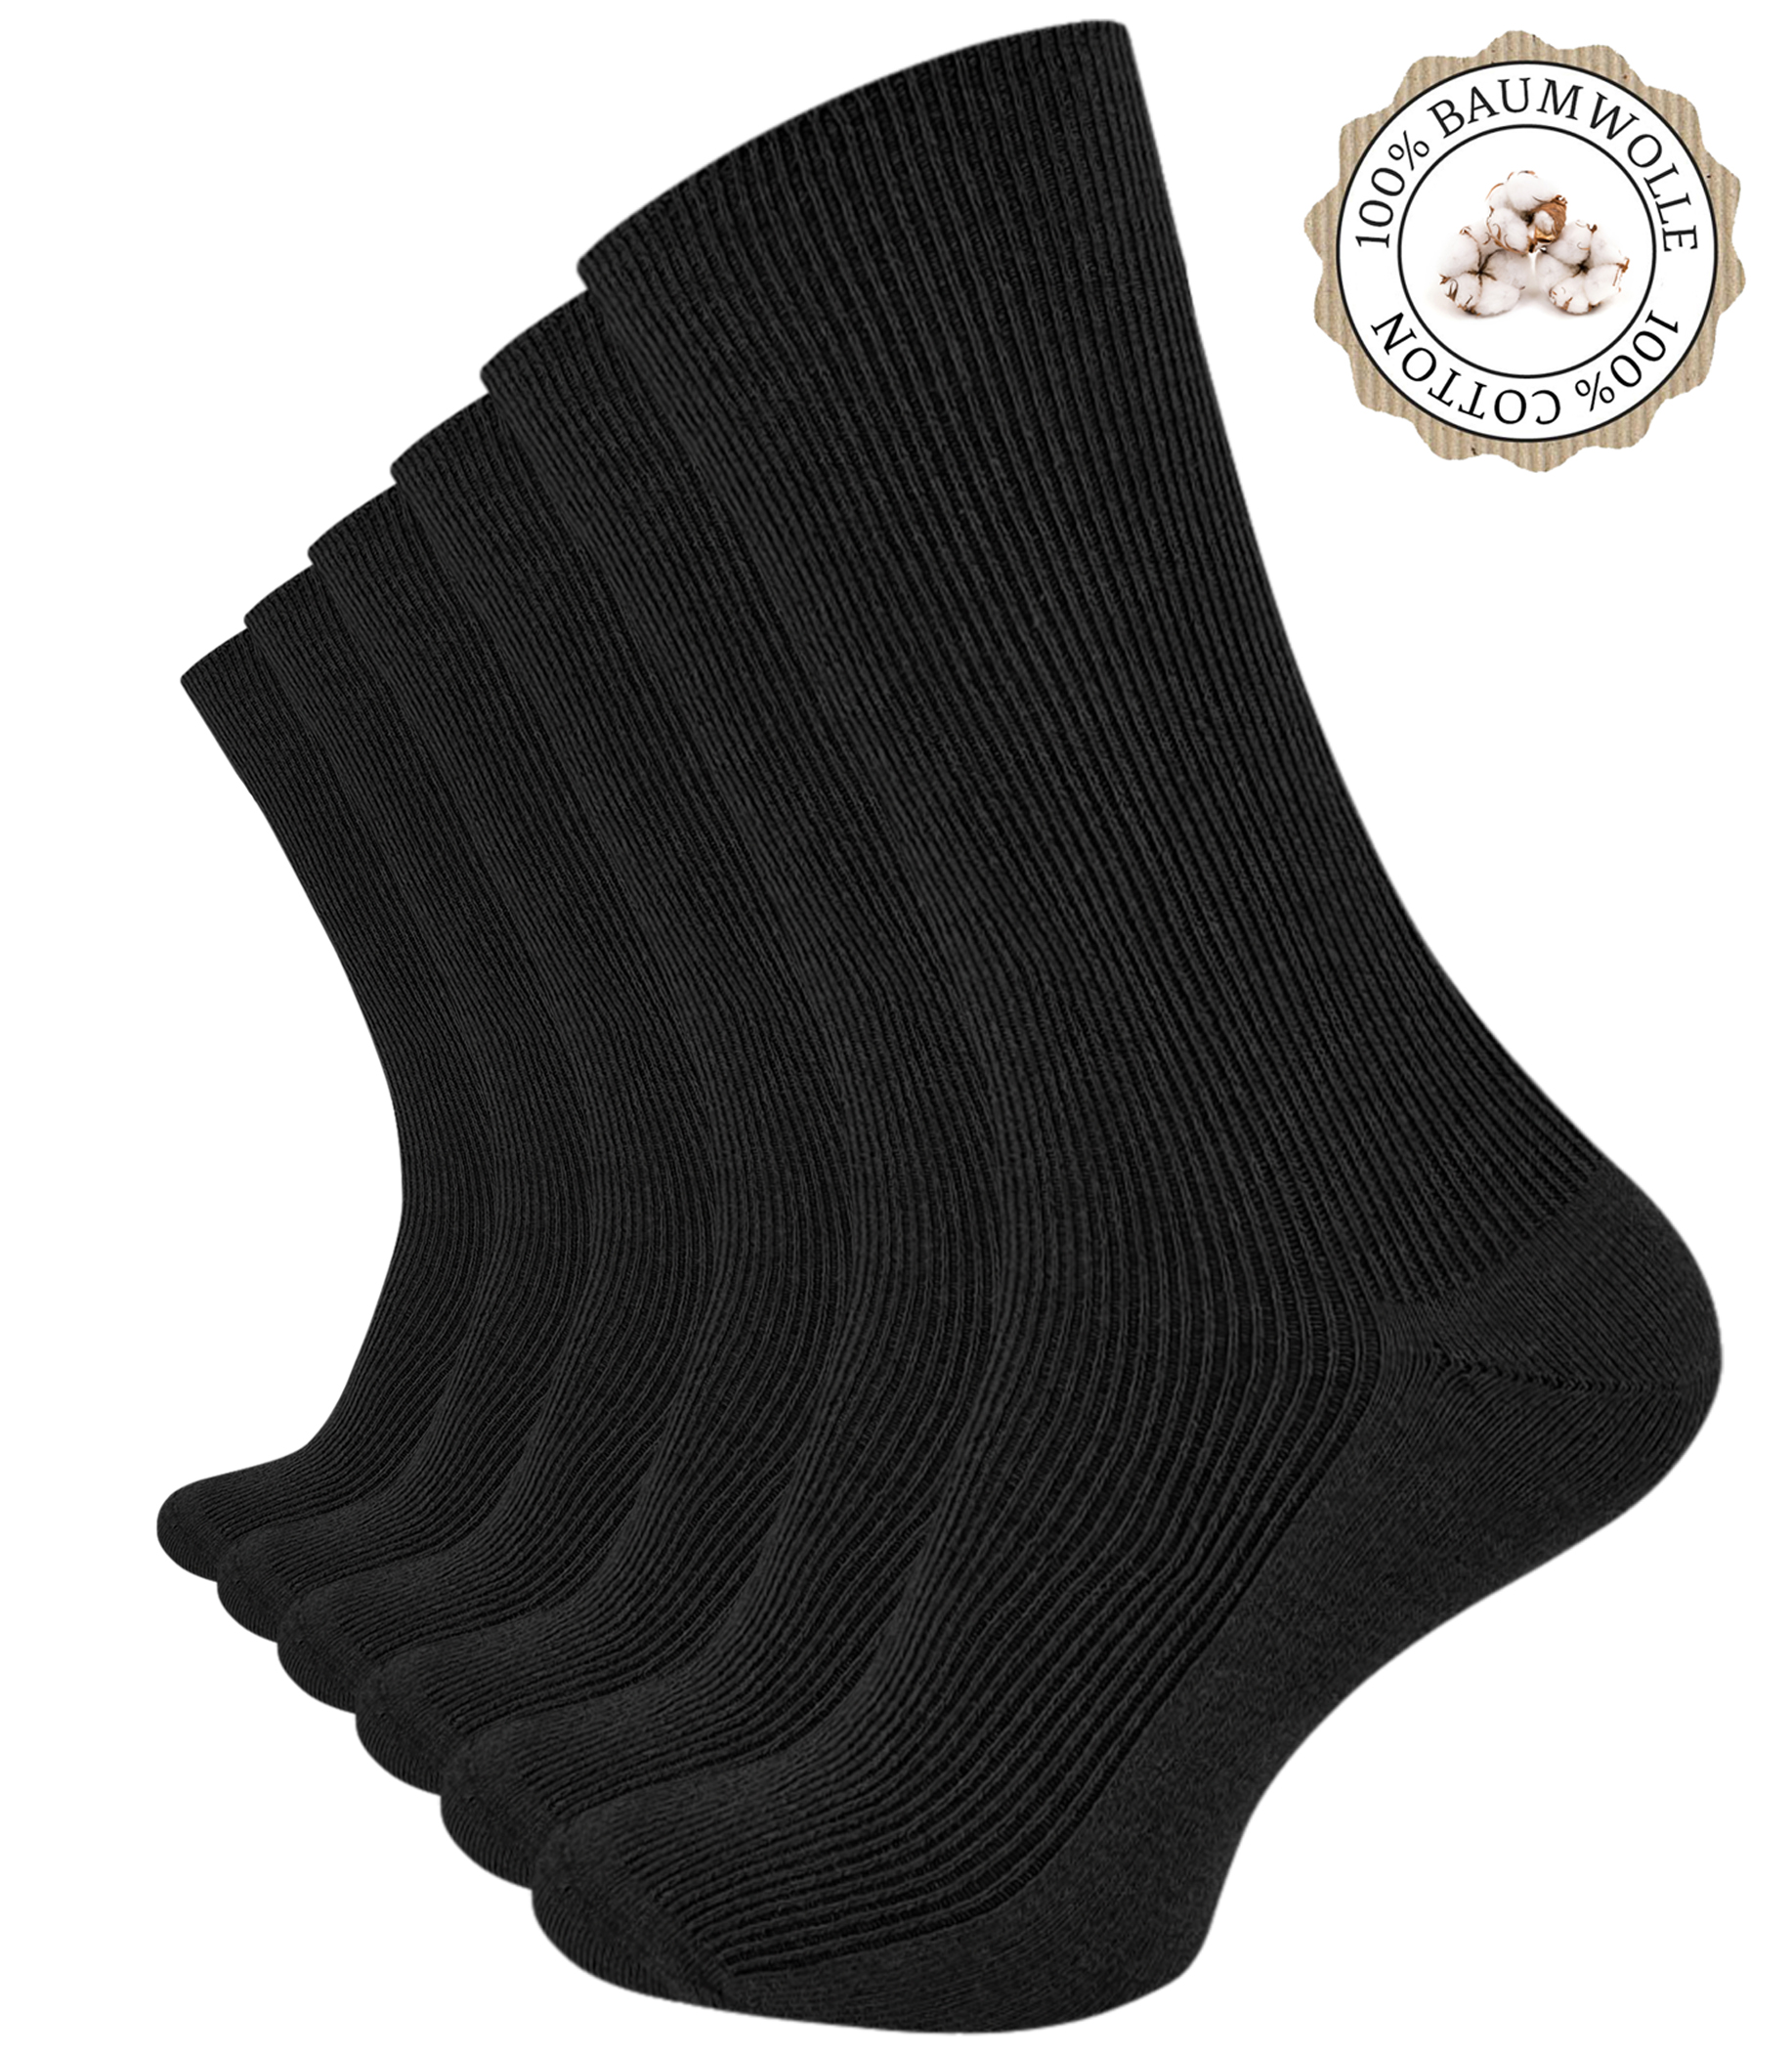 15 Paar Herren Kellner Socken schwarz 100% Baumwolle ohne Naht Sonderaktion 